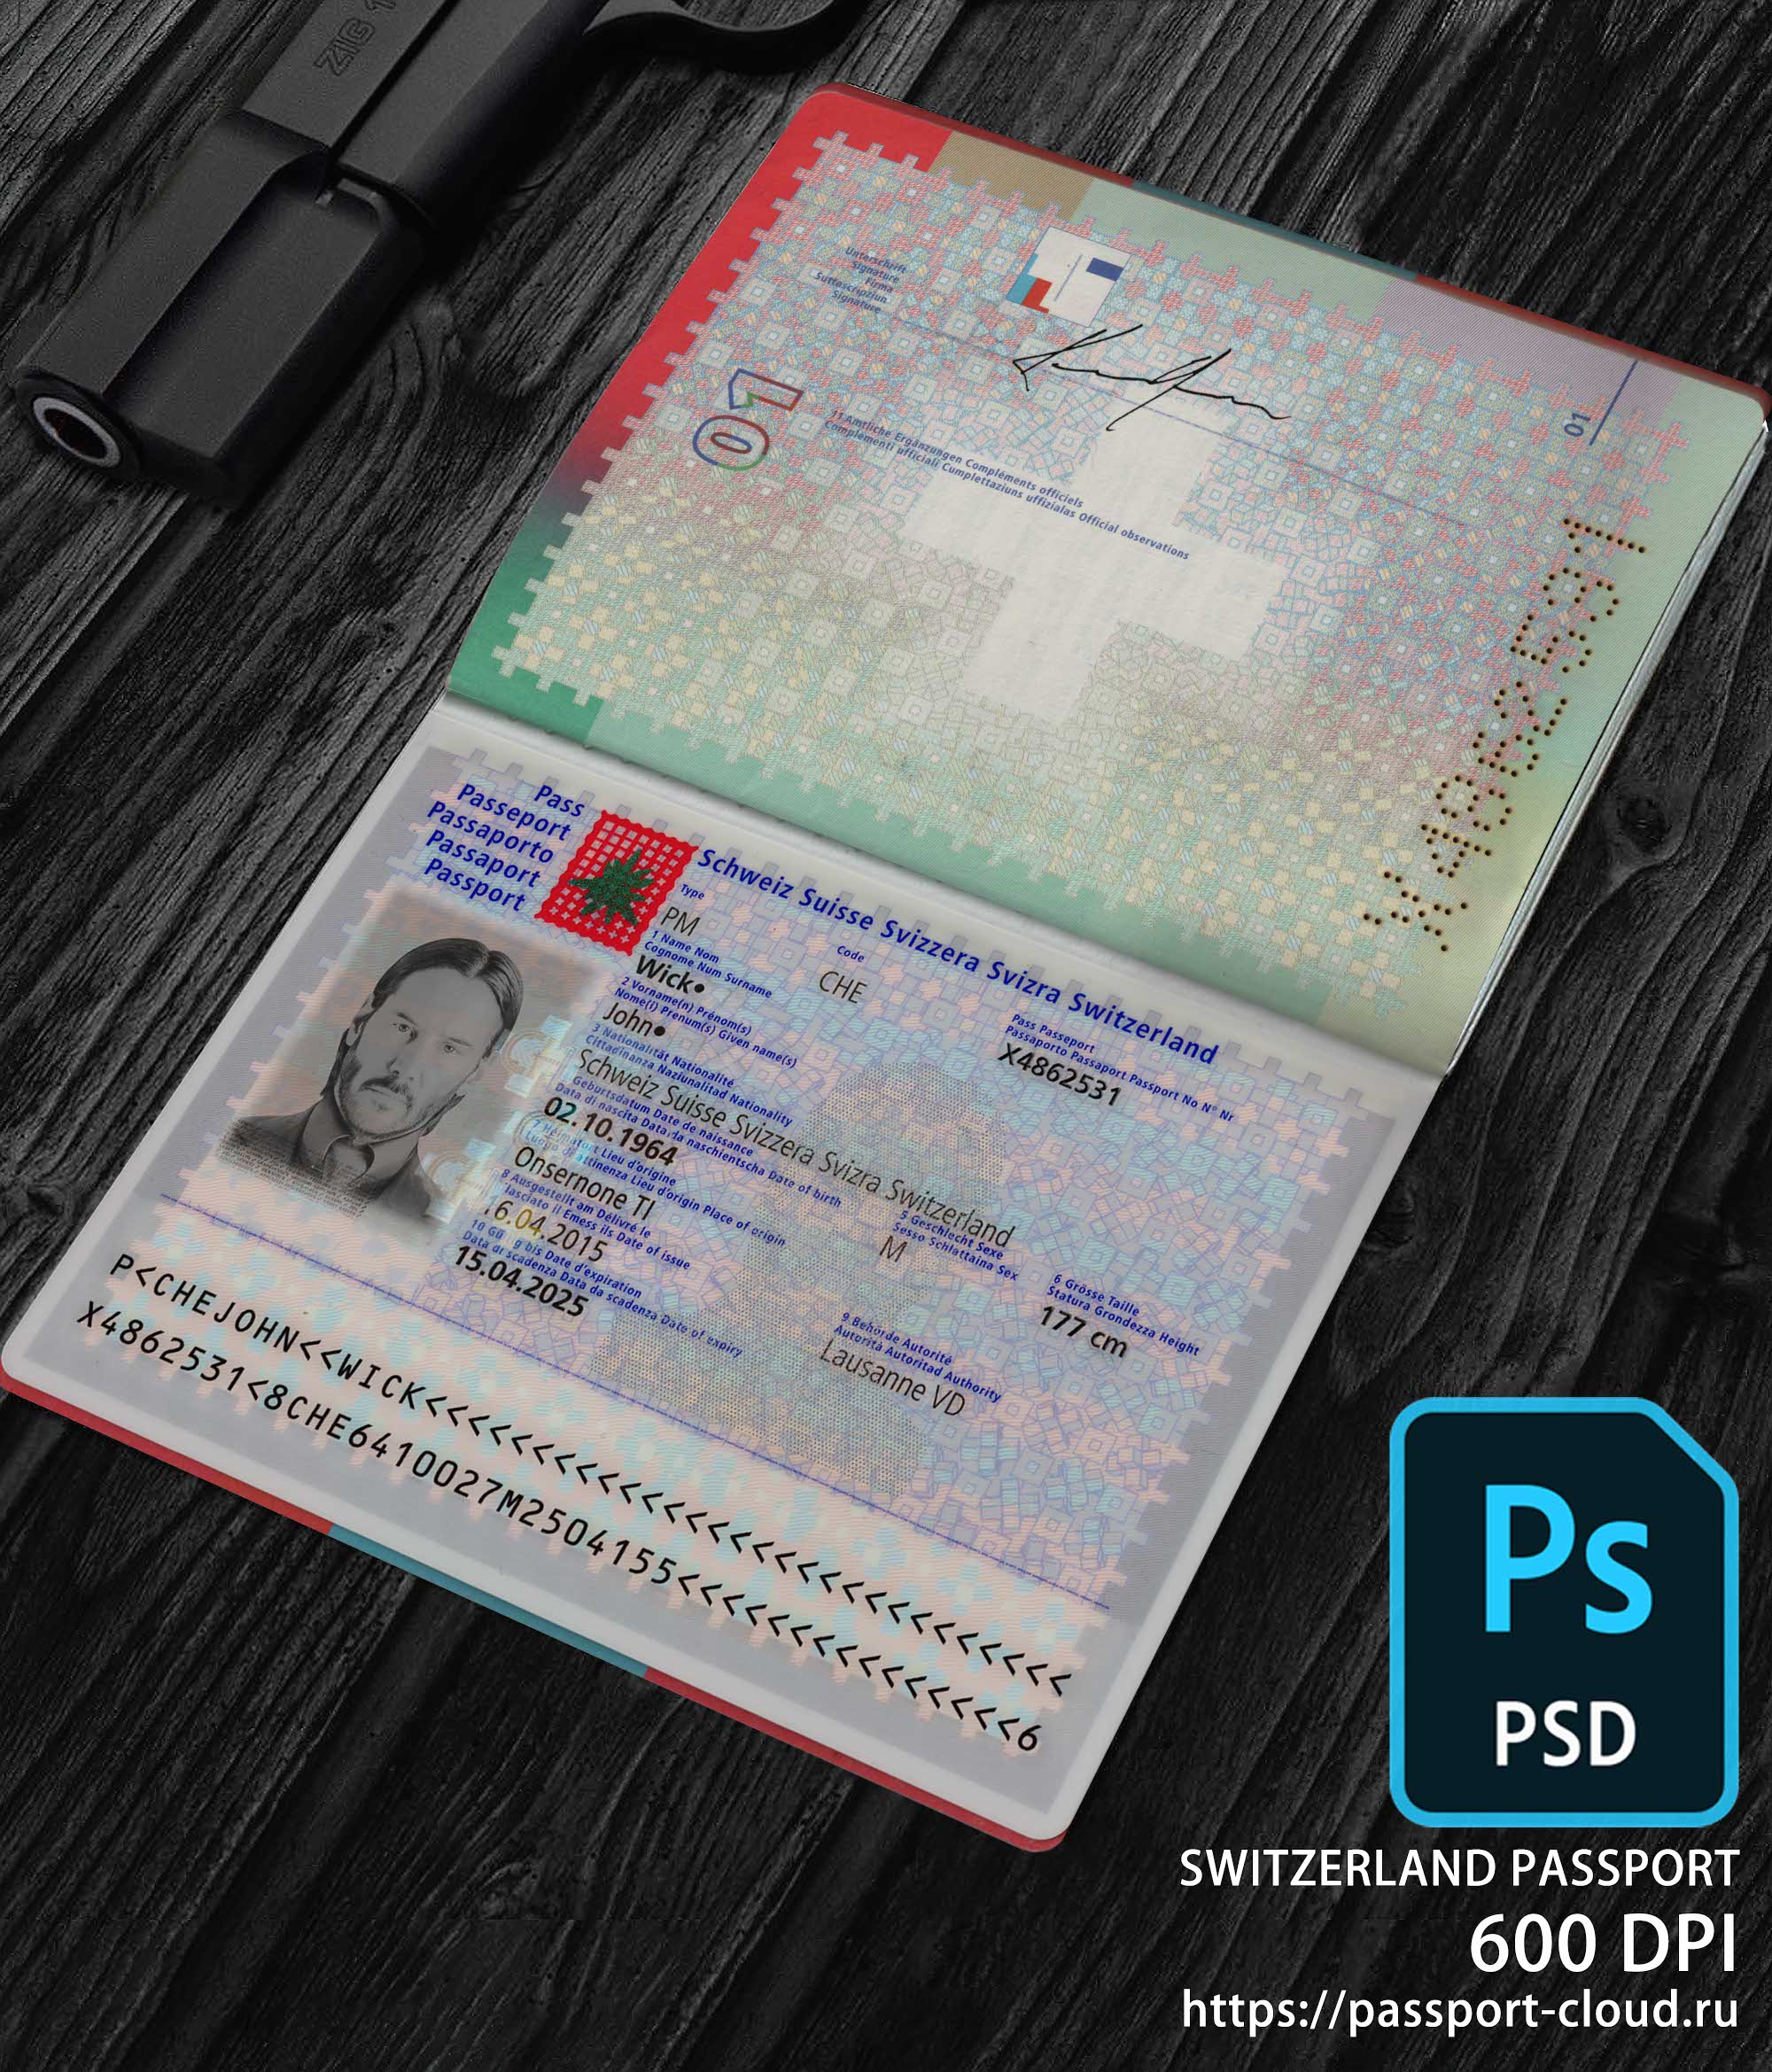 Switzerland Passport 2010+ PSD1